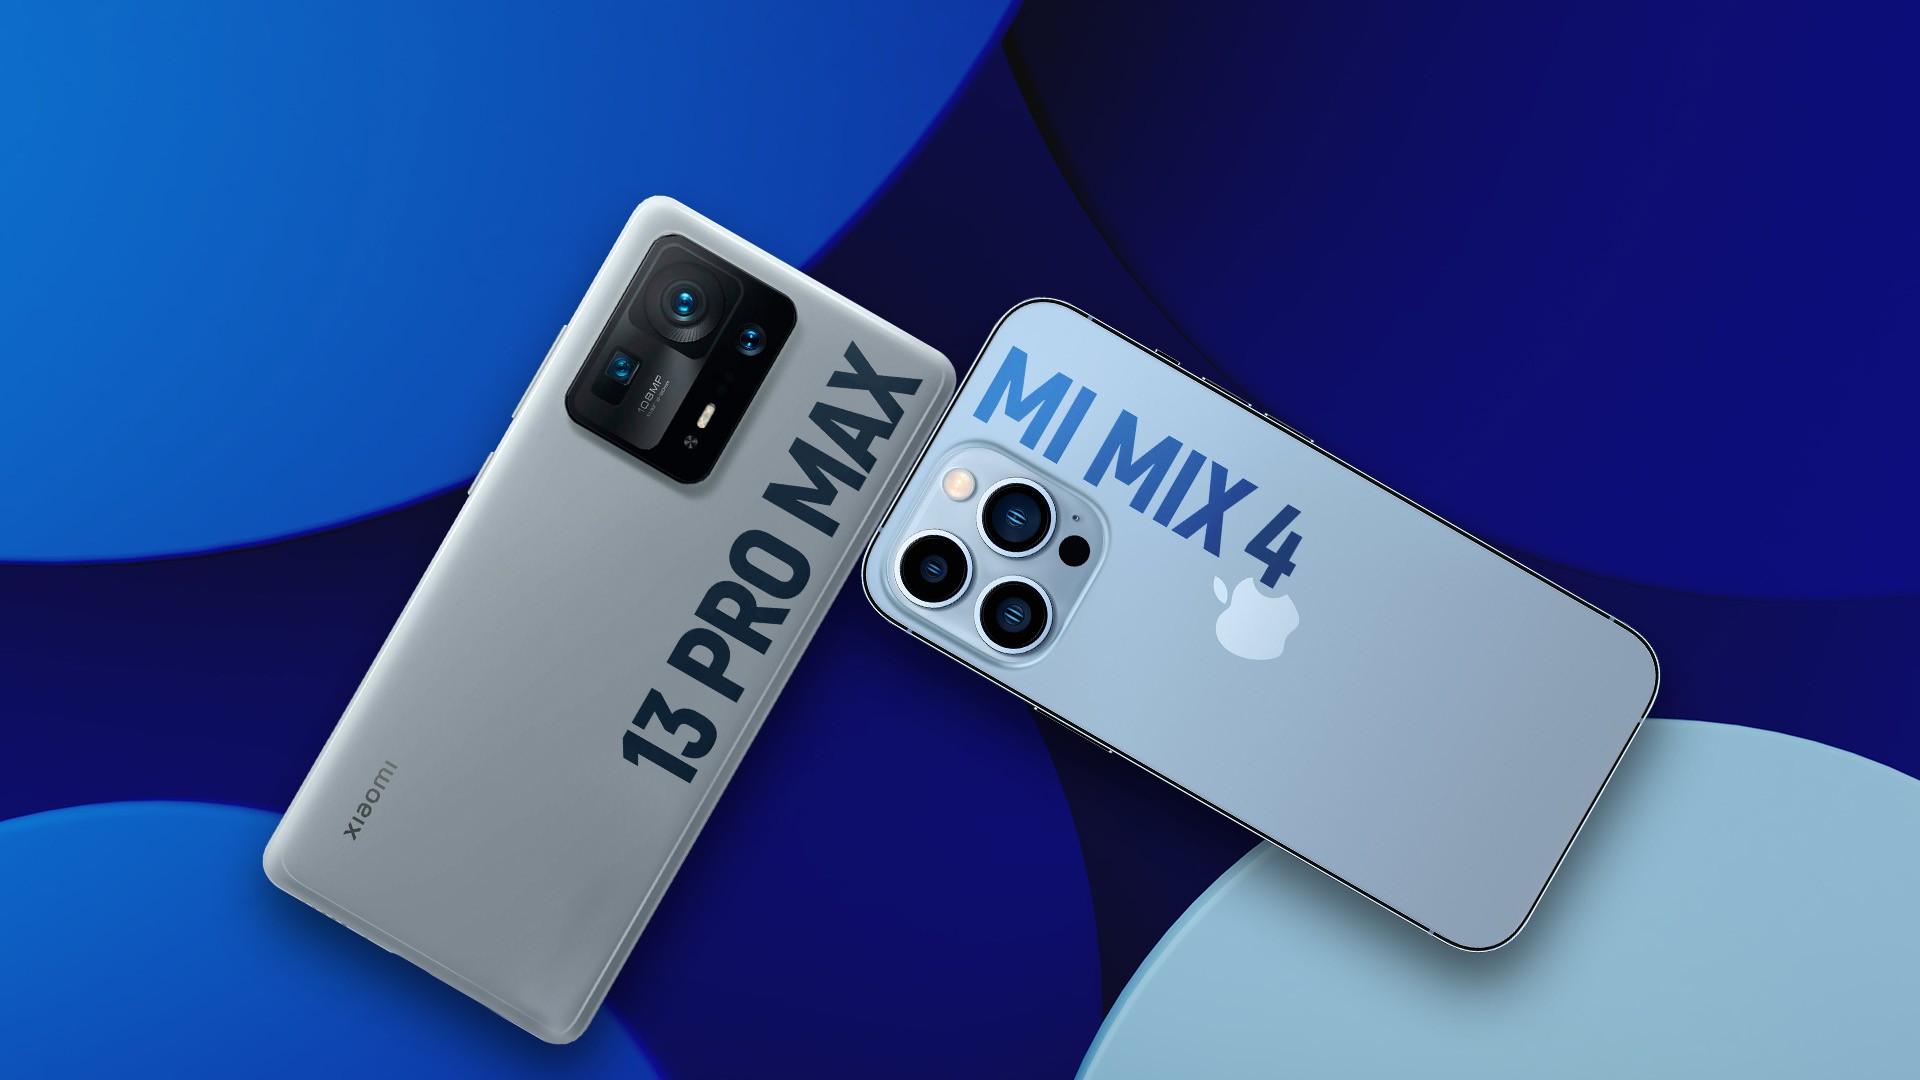 iPhone 13 Pro Max vs Huawei P50 pro: Qual o melhor celular?